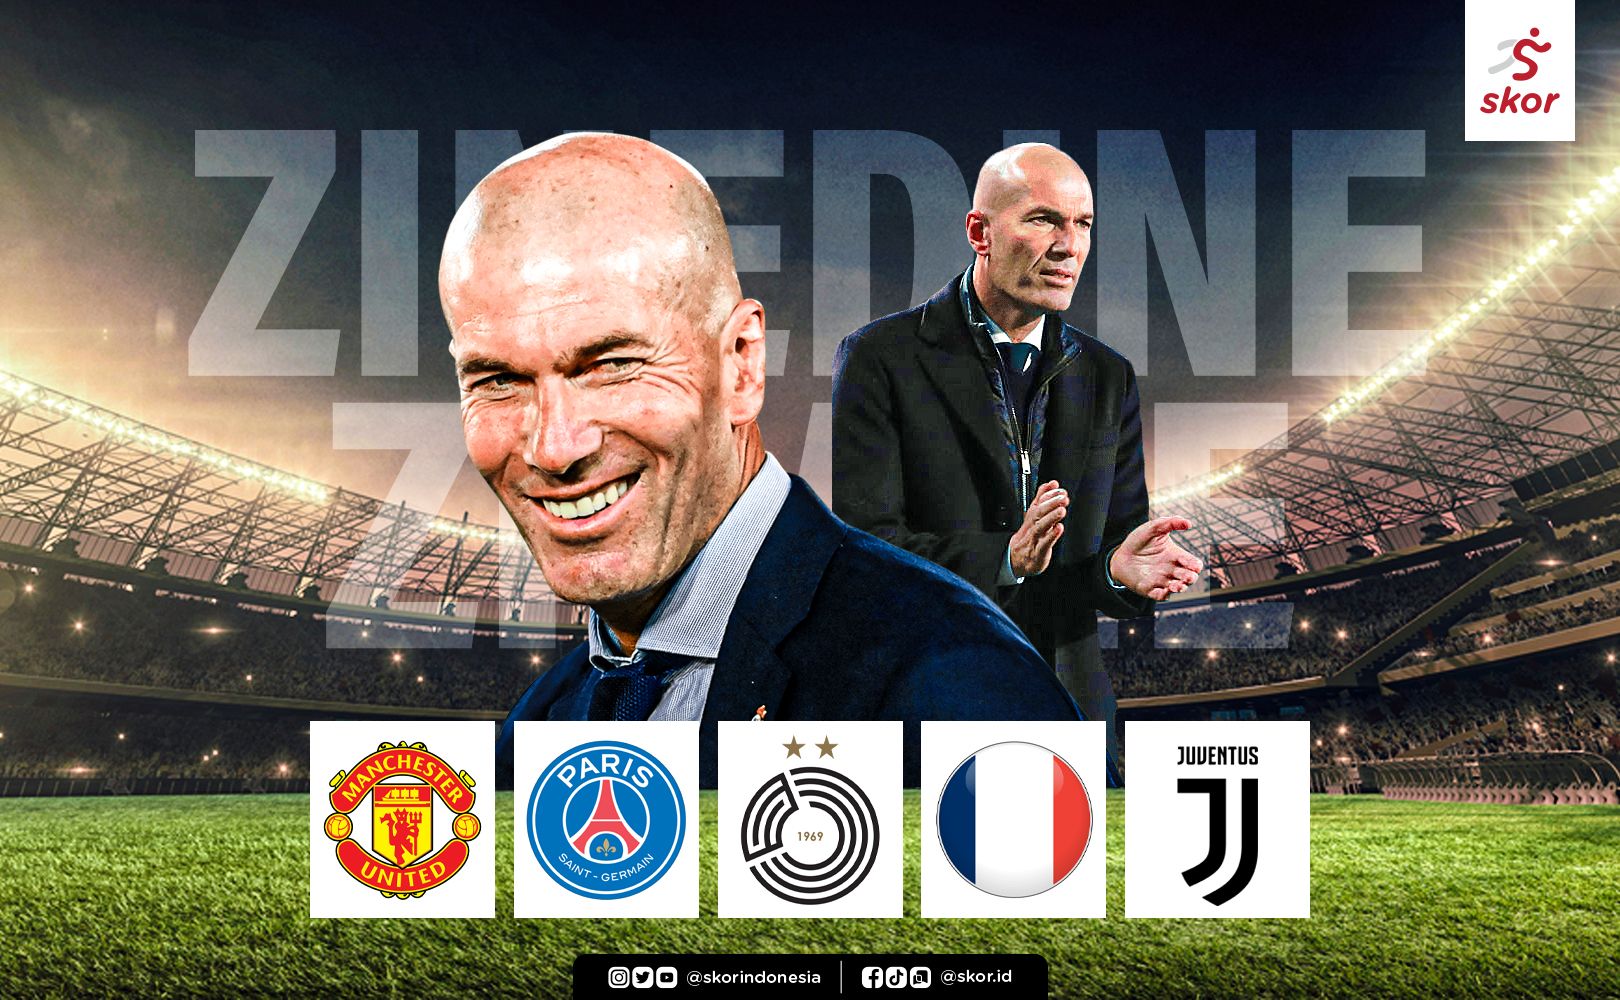 Zinedine Zidane pelatih yang paling banyak diinginkan sejumlah klub dan tim pada 2021 ini.